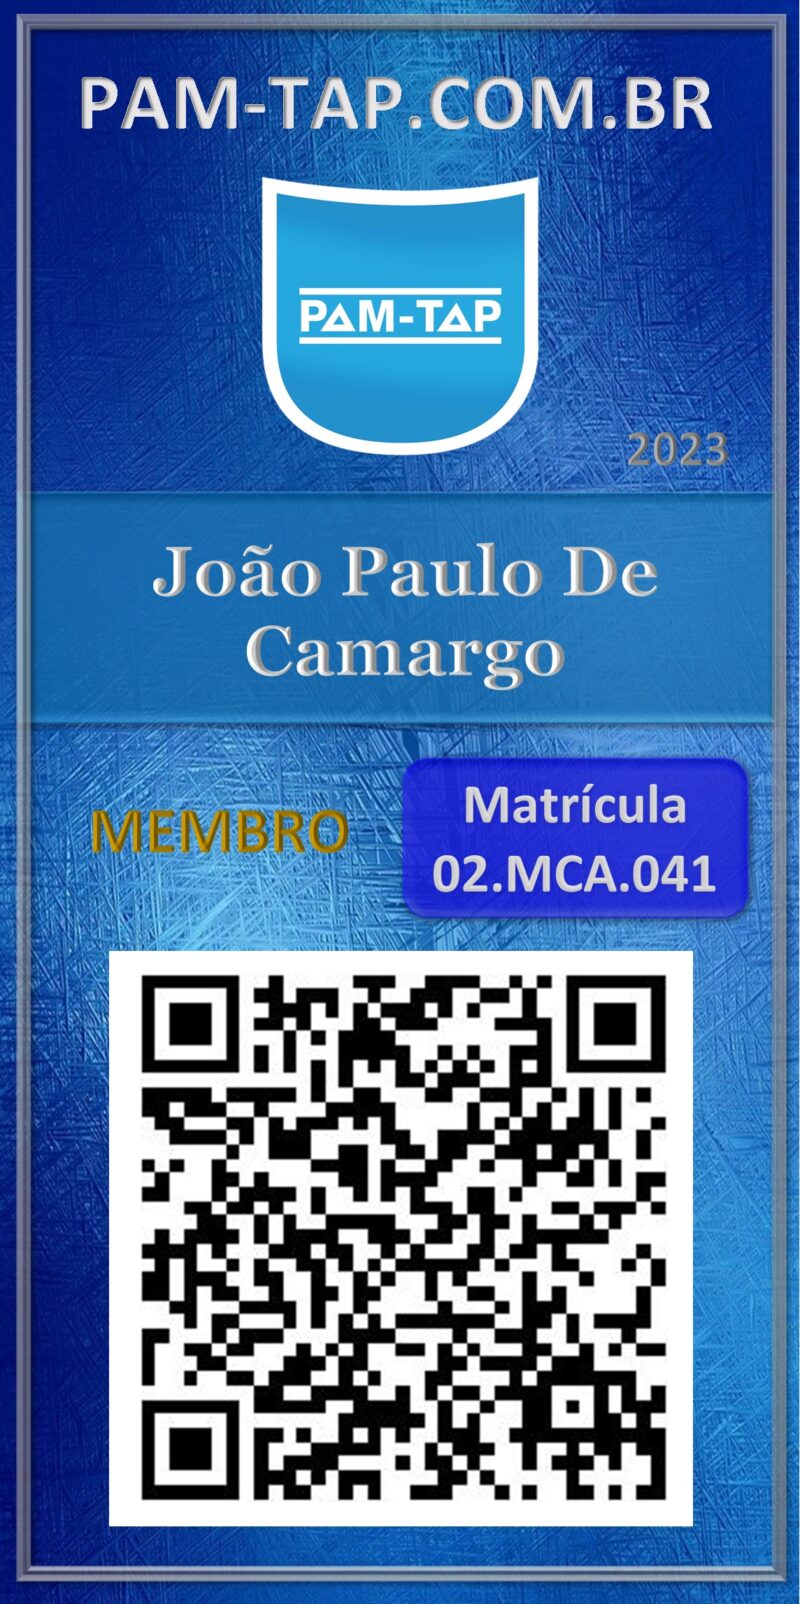 João Paulo De Camargo-Hazmat 2022-Membro